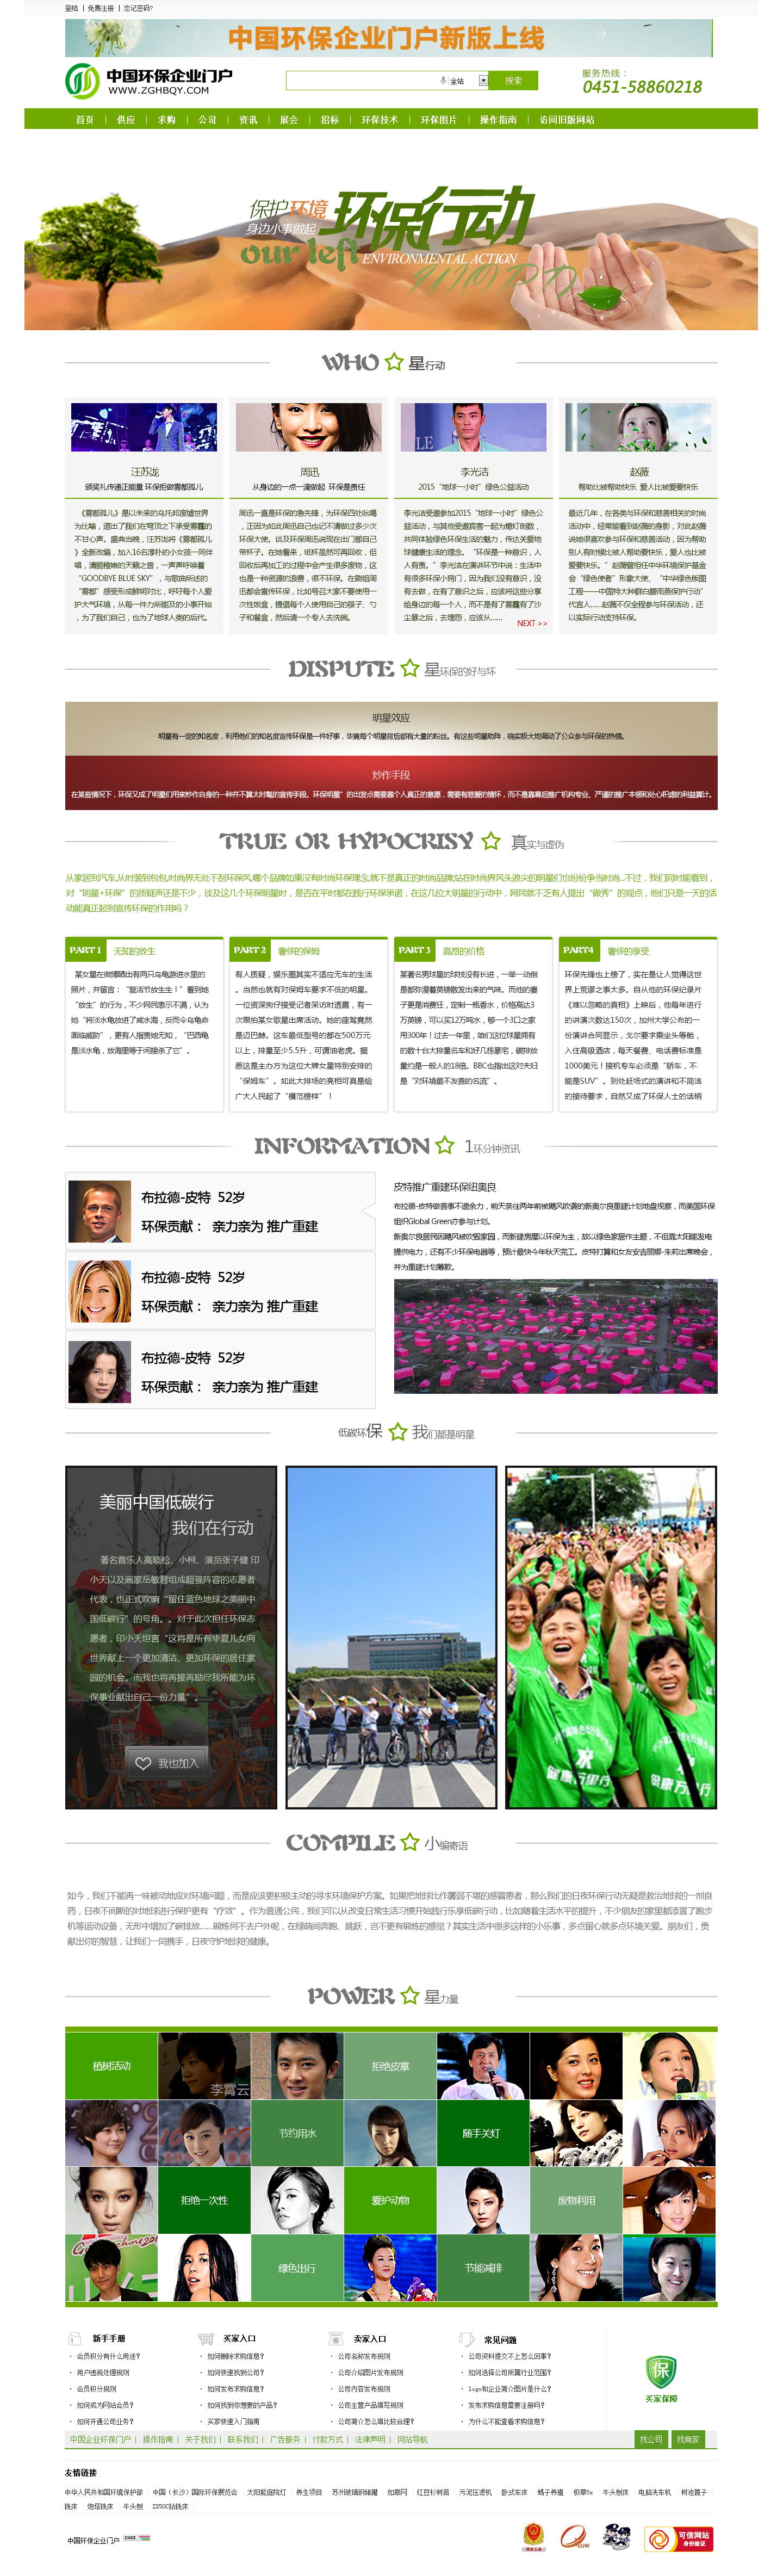 绿色的环保企业专题页面模板下载